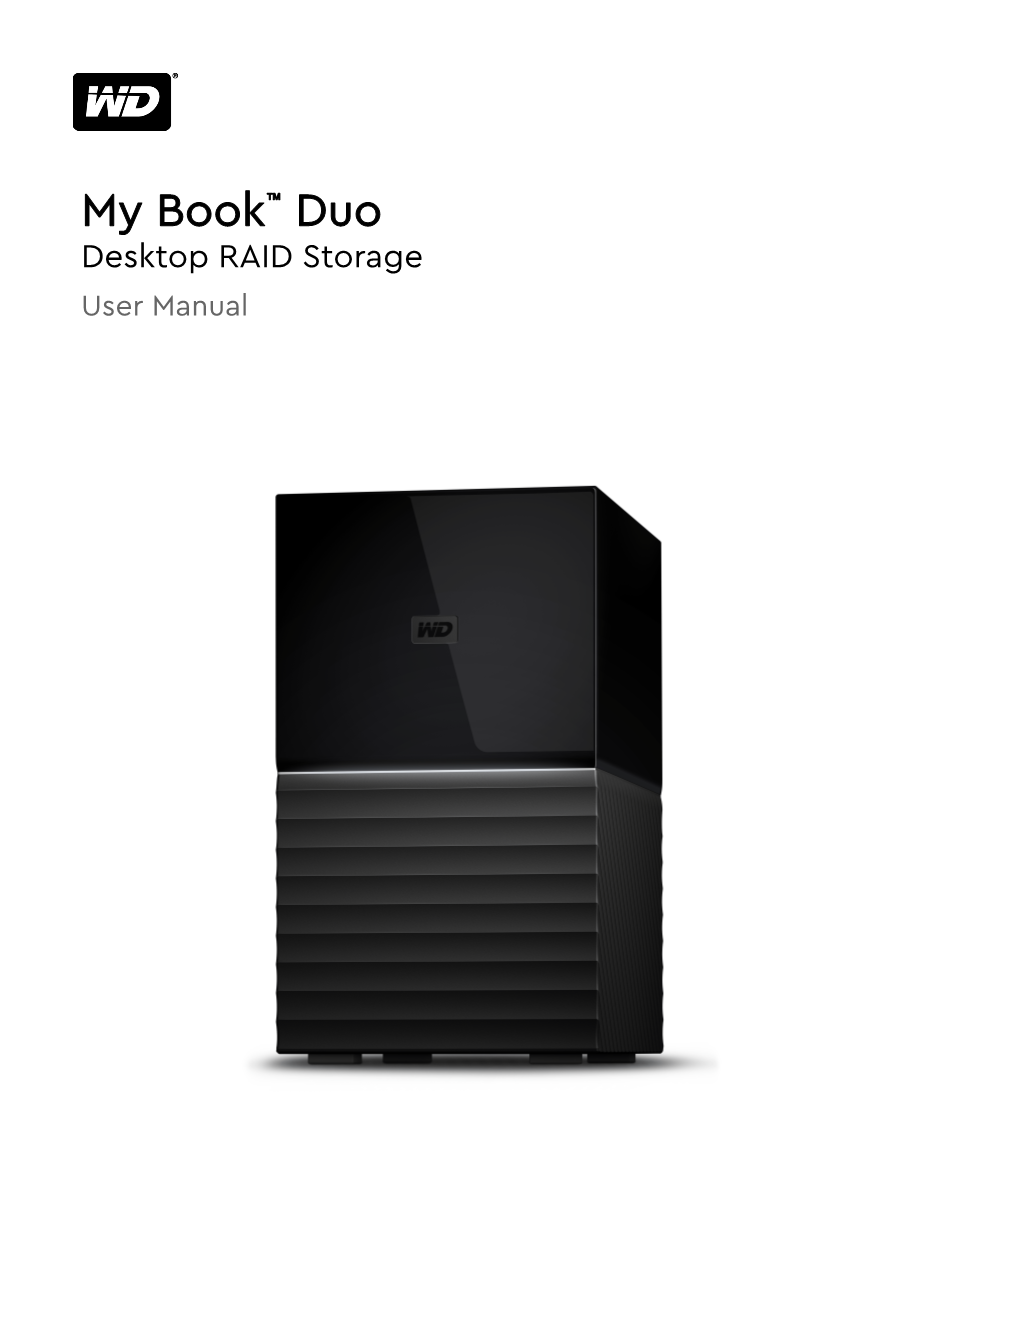 My Book™ Duo Desktop RAID Storage User Manual